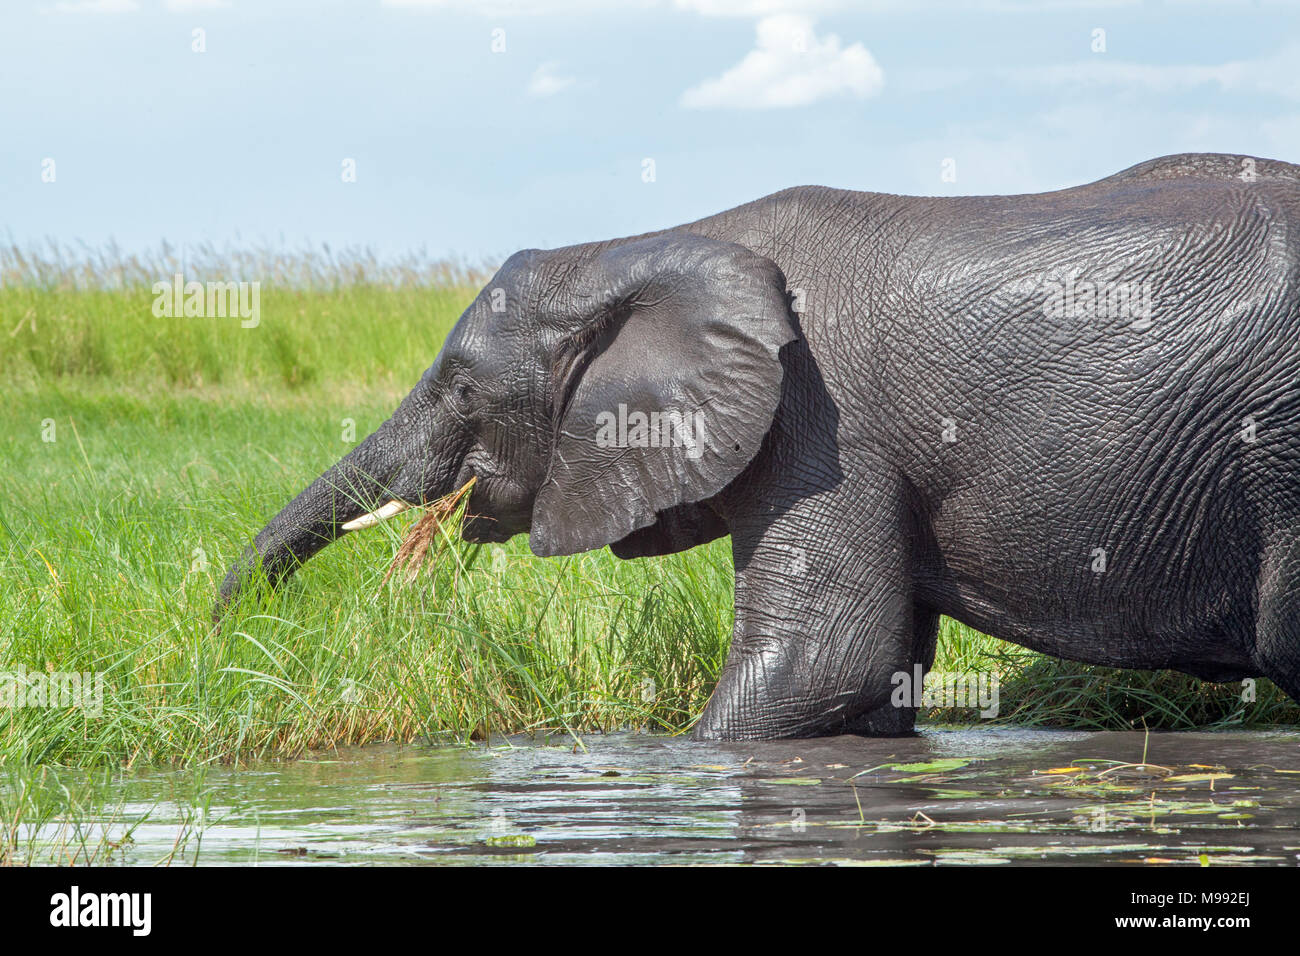 L'éléphant africain (Loxodonta africana). Recueillir l'eau de végétation verte bord de manger à l'aide d'agrégation. Parc National de Chobe. Delta de l'Okavango. Le Botswana. Afrique du Sud Banque D'Images